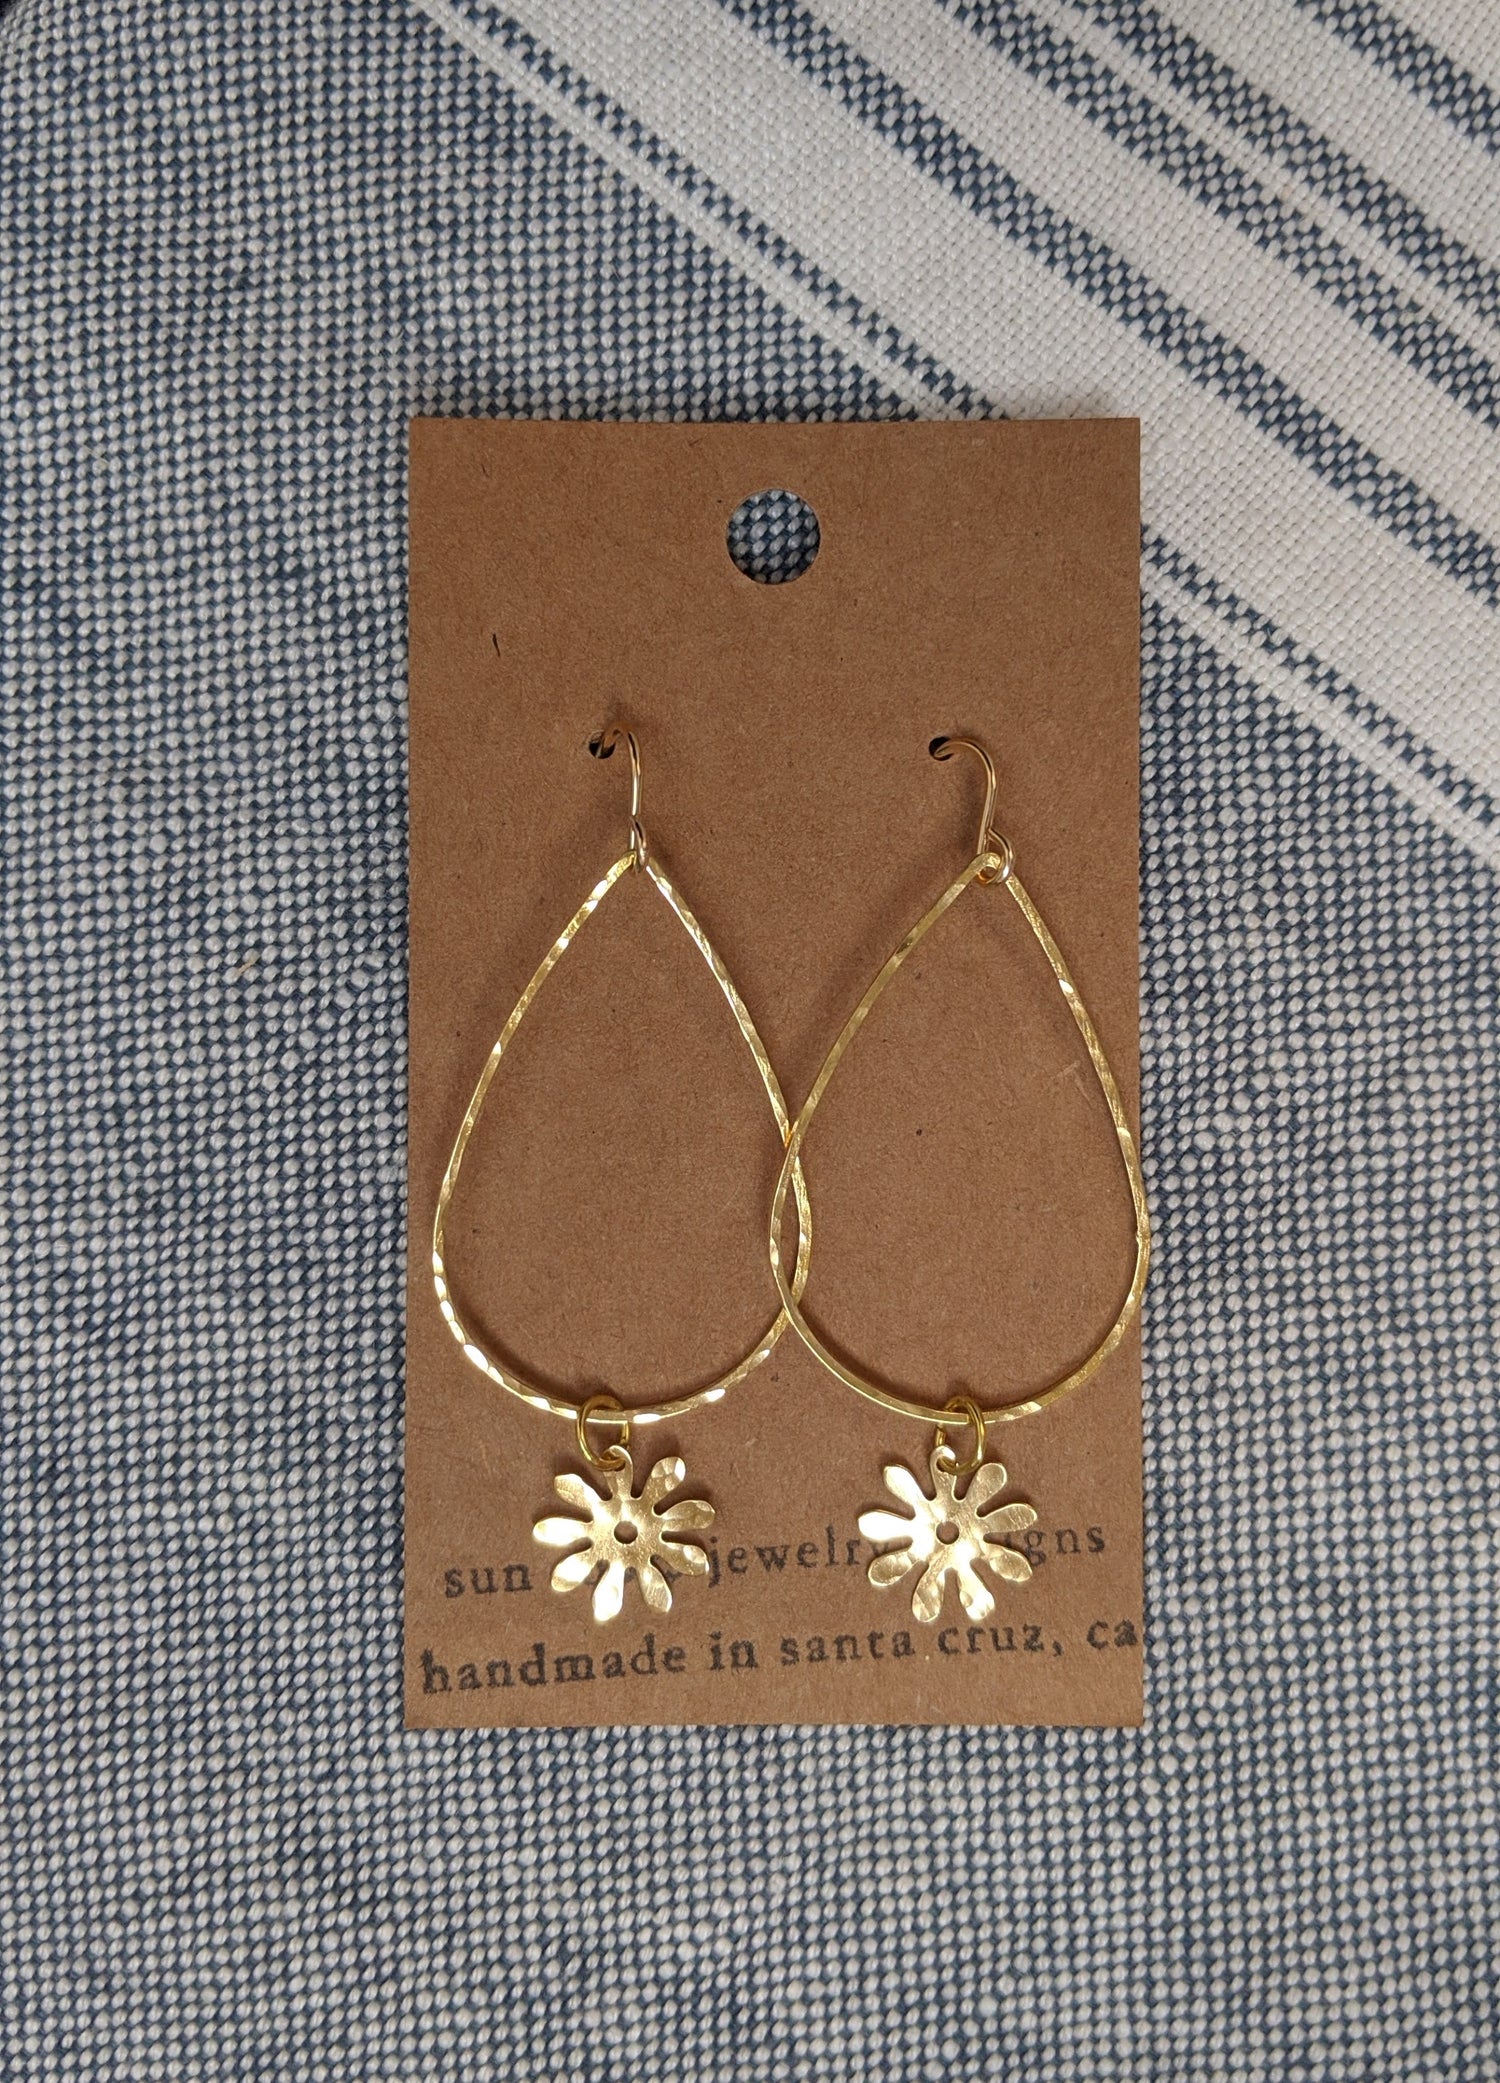 Flower Drop brass earrings by Sunroots Jewlery